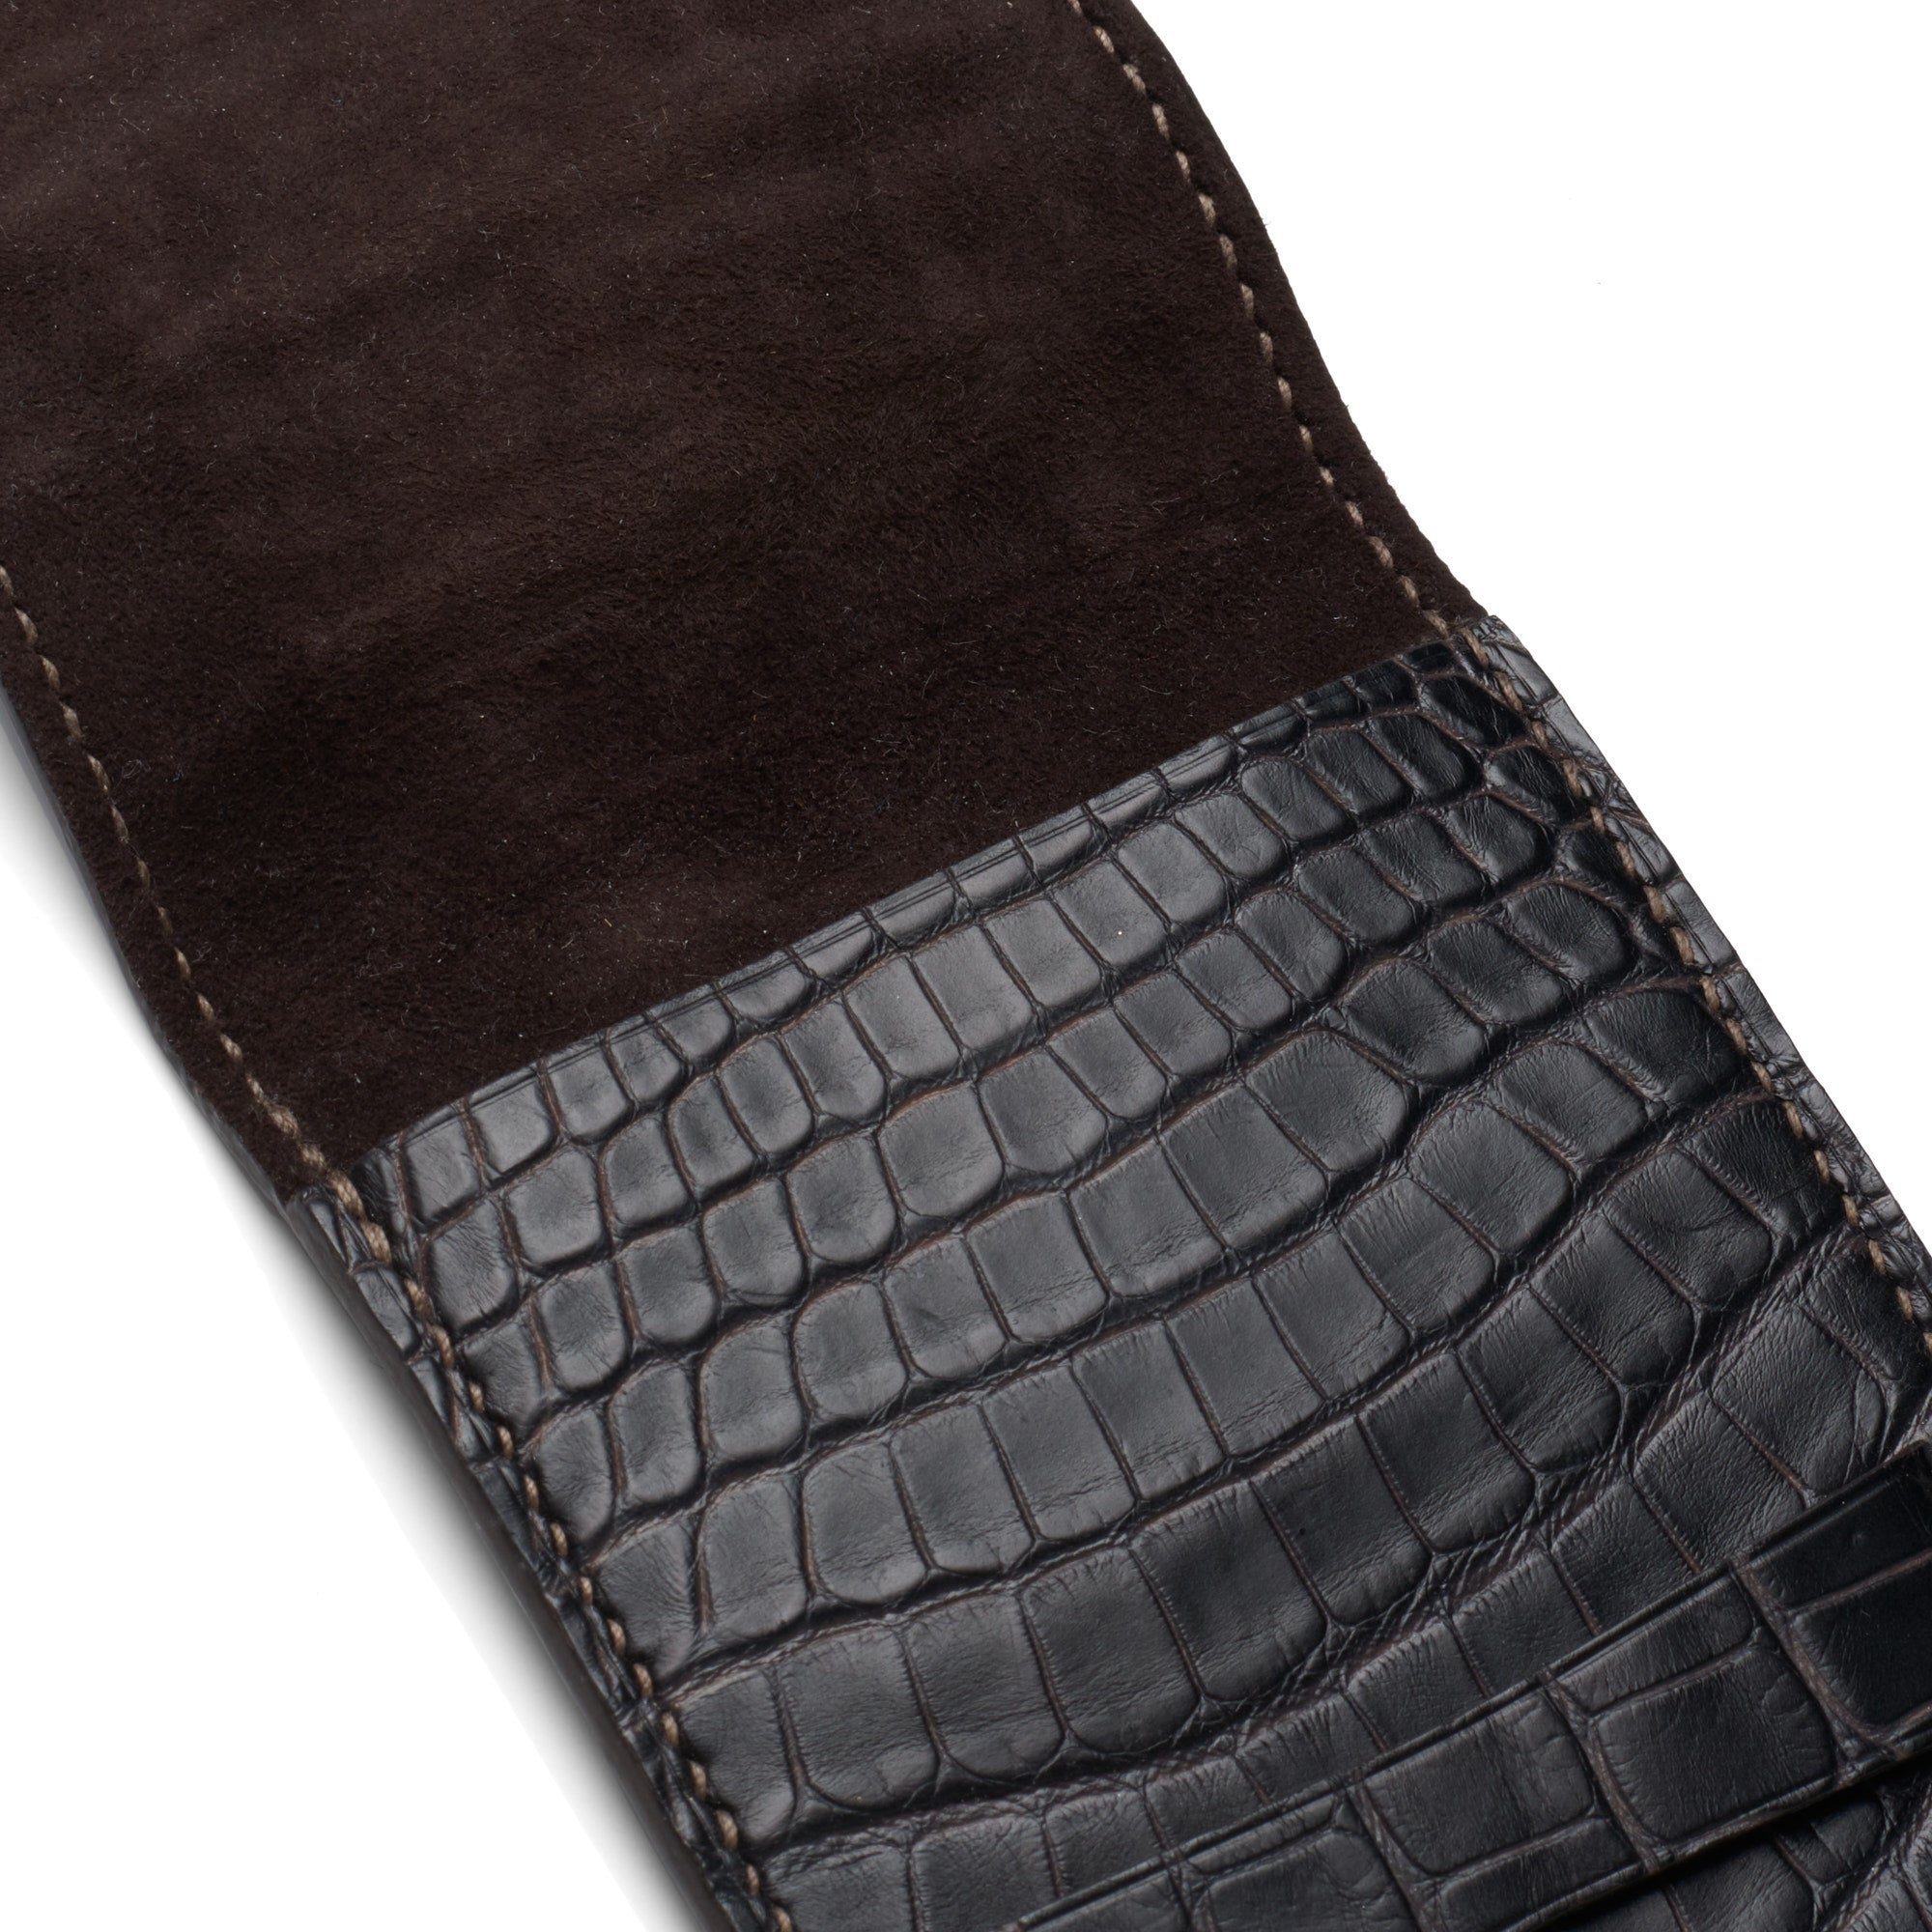 Pre-owned Matte Black Genuine Crocodile/alligator Leather Skin For  Jacket,biker Jacket